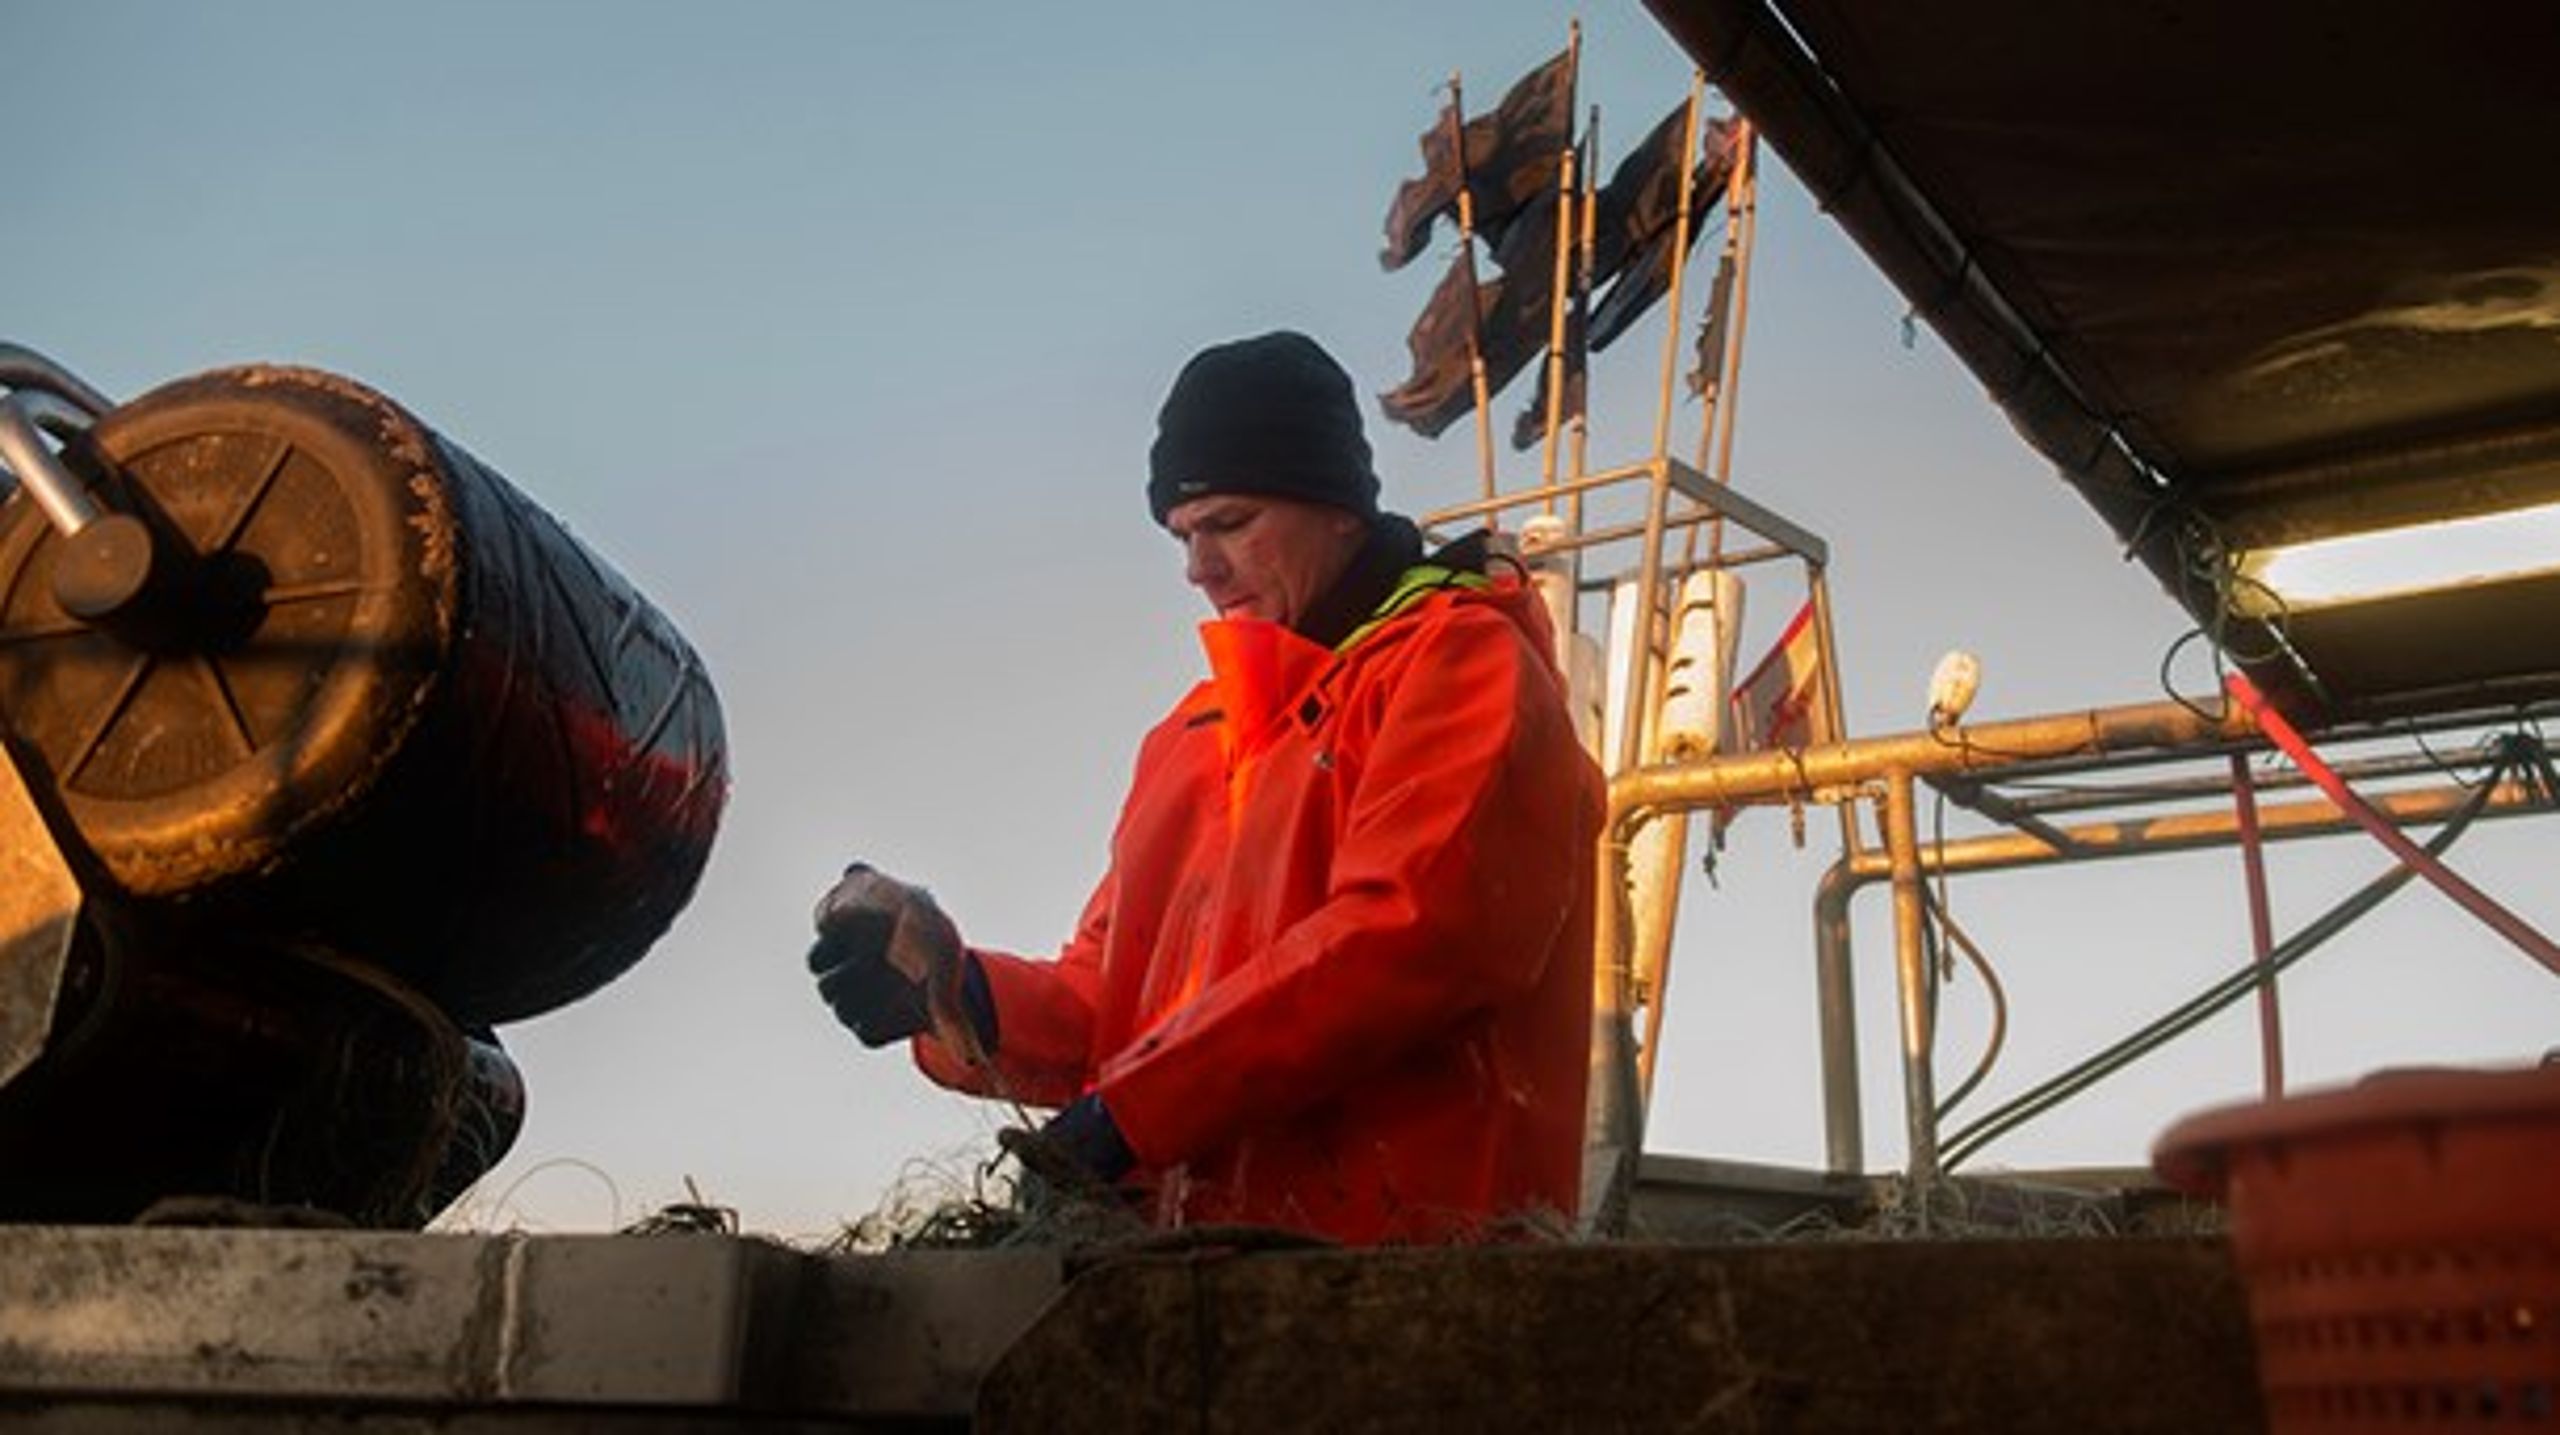 Fiskeriet er mange
steder blevet nærmest umuligt på grund af sæler, mener Søren Jacobsen.